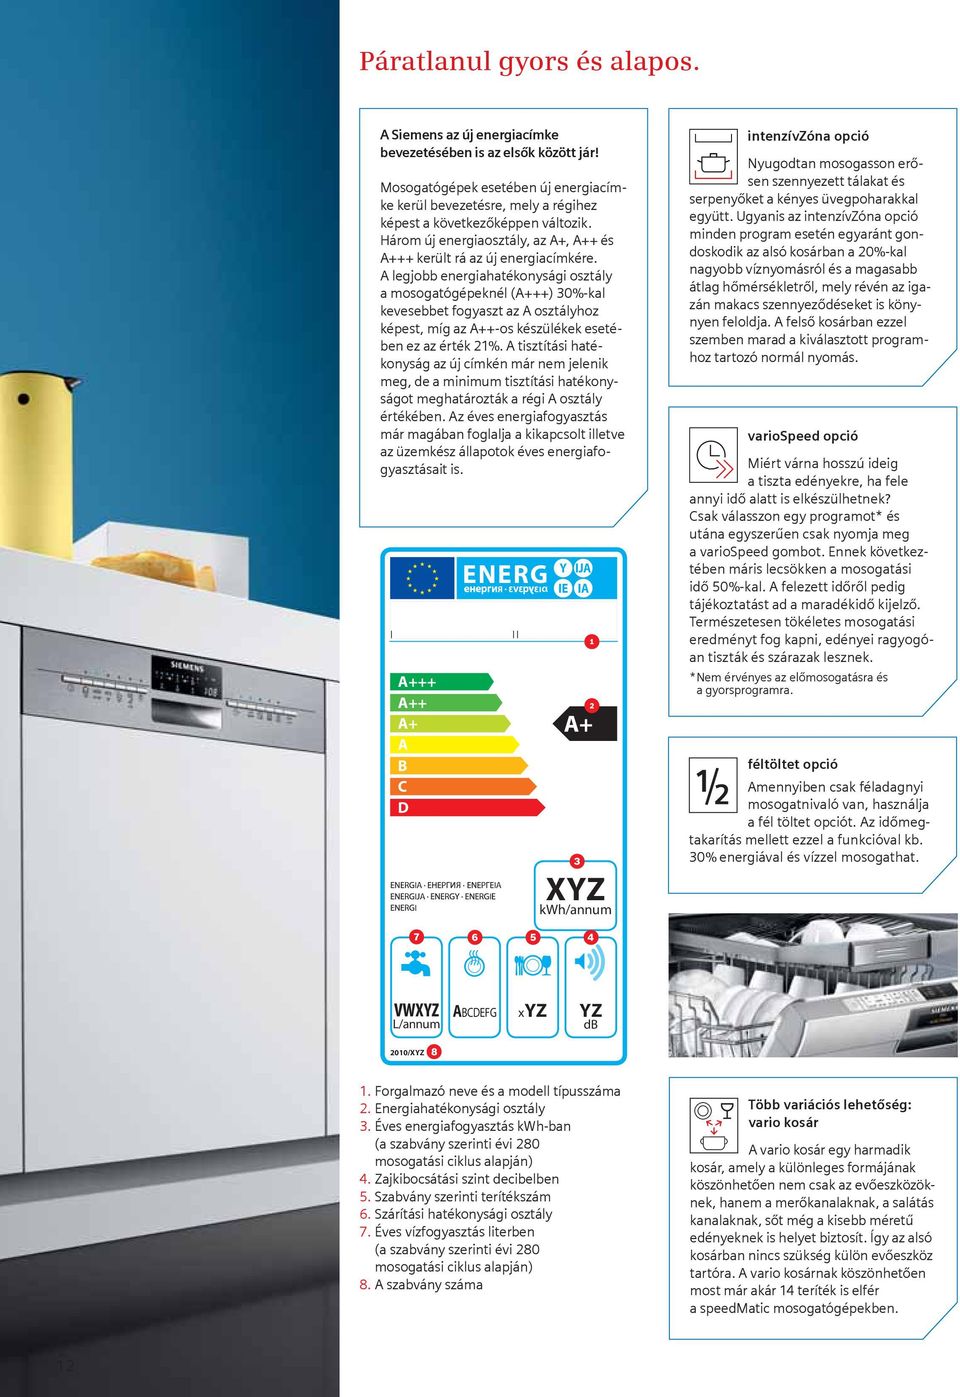 A legjobb energiahatékonysági osztály a mosogatógépeknél (A+++) 30%-kal kevesebbet fogyaszt az A osztályhoz képest, míg az A++-os készülékek esetében ez az érték 21%.